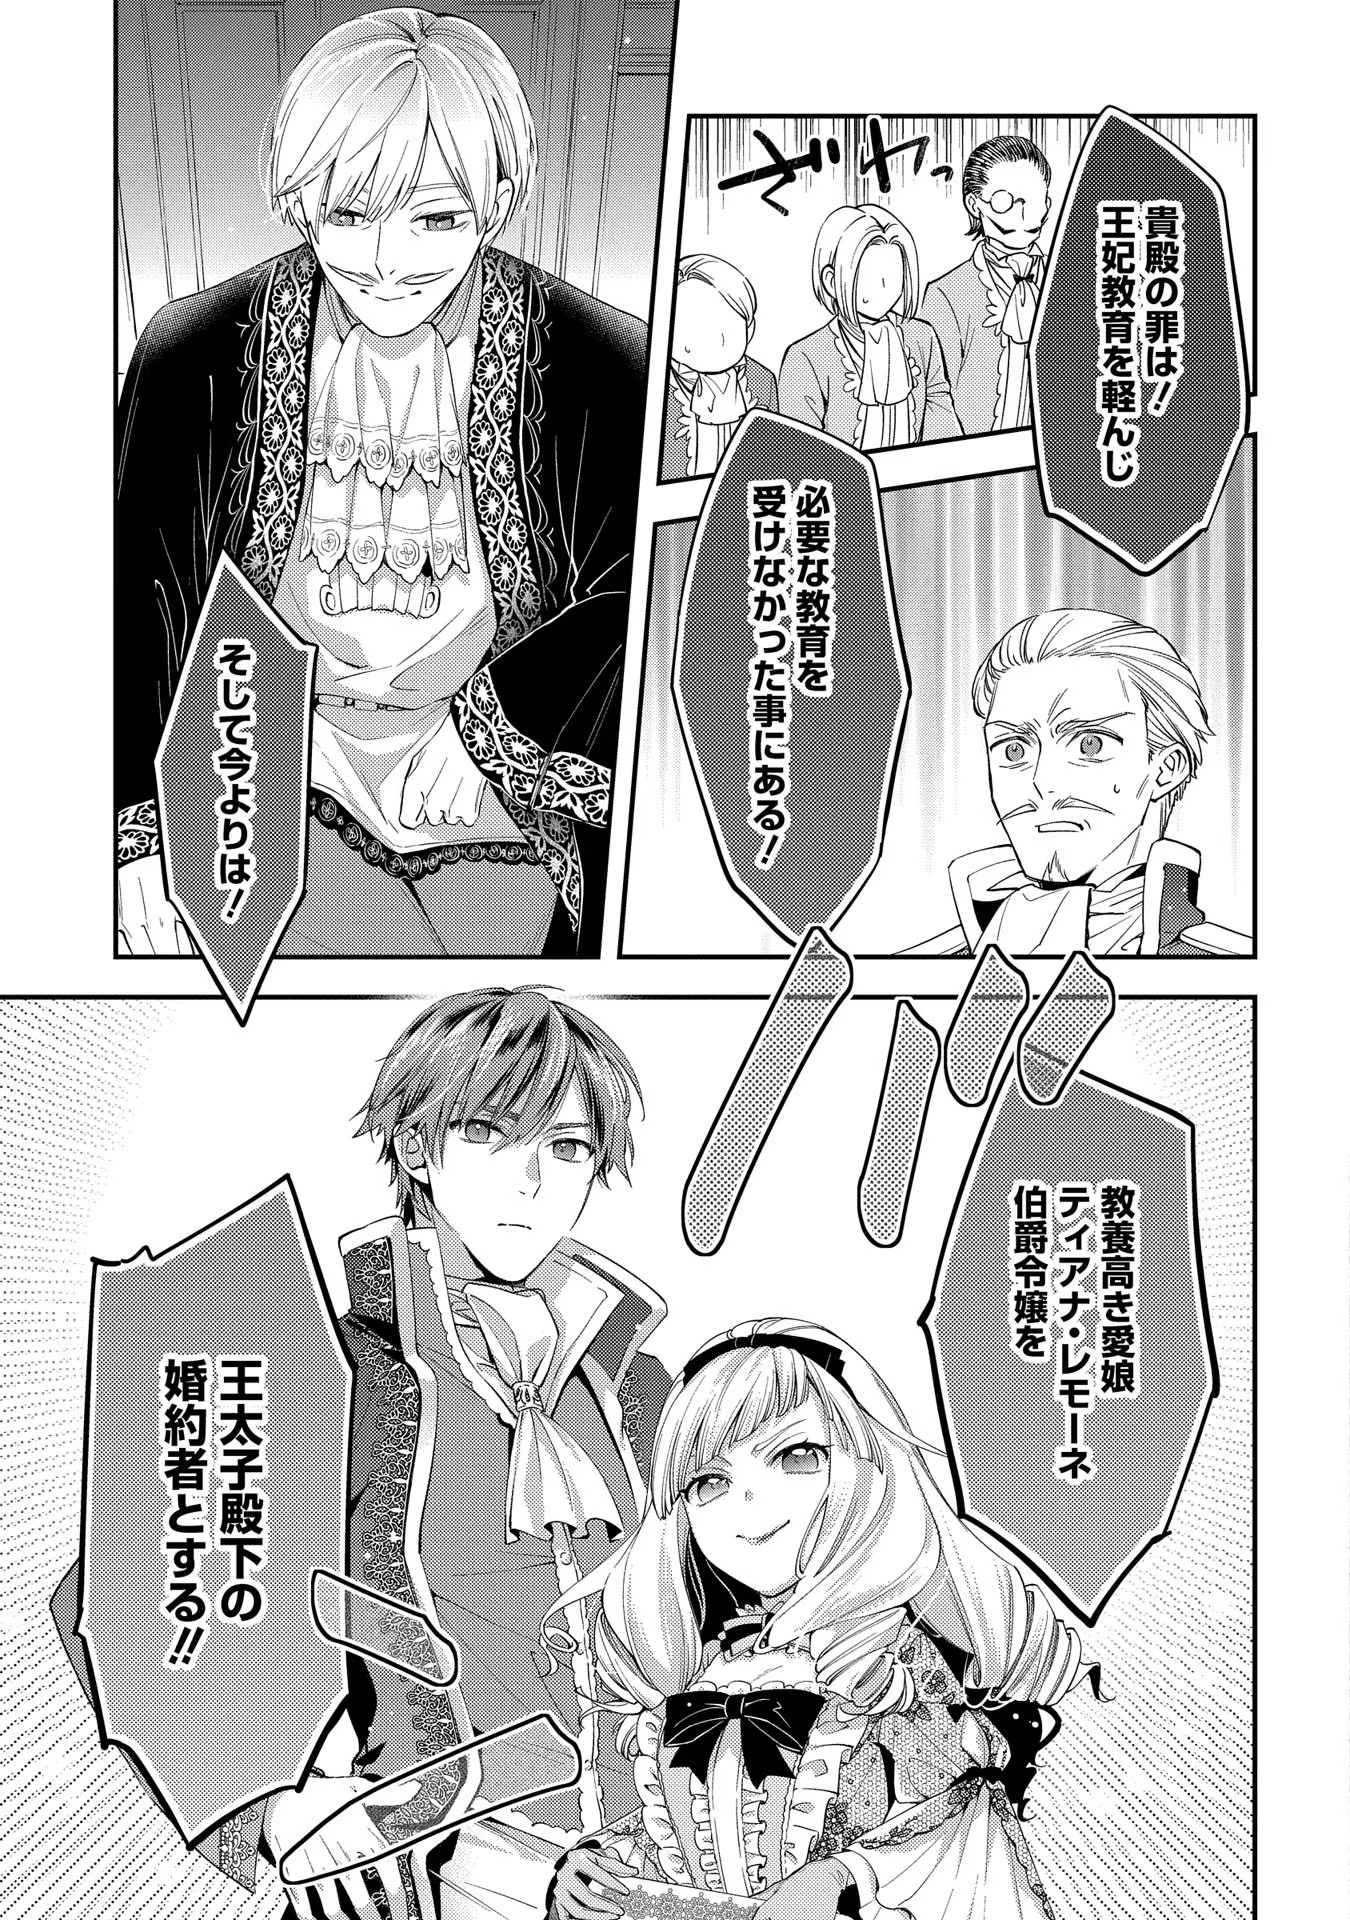 Outaishi ni Konyaku Hakisareta no de, Mou Baka no Furi wa Yameyou to Omoimasu - Chapter 1 - Page 13